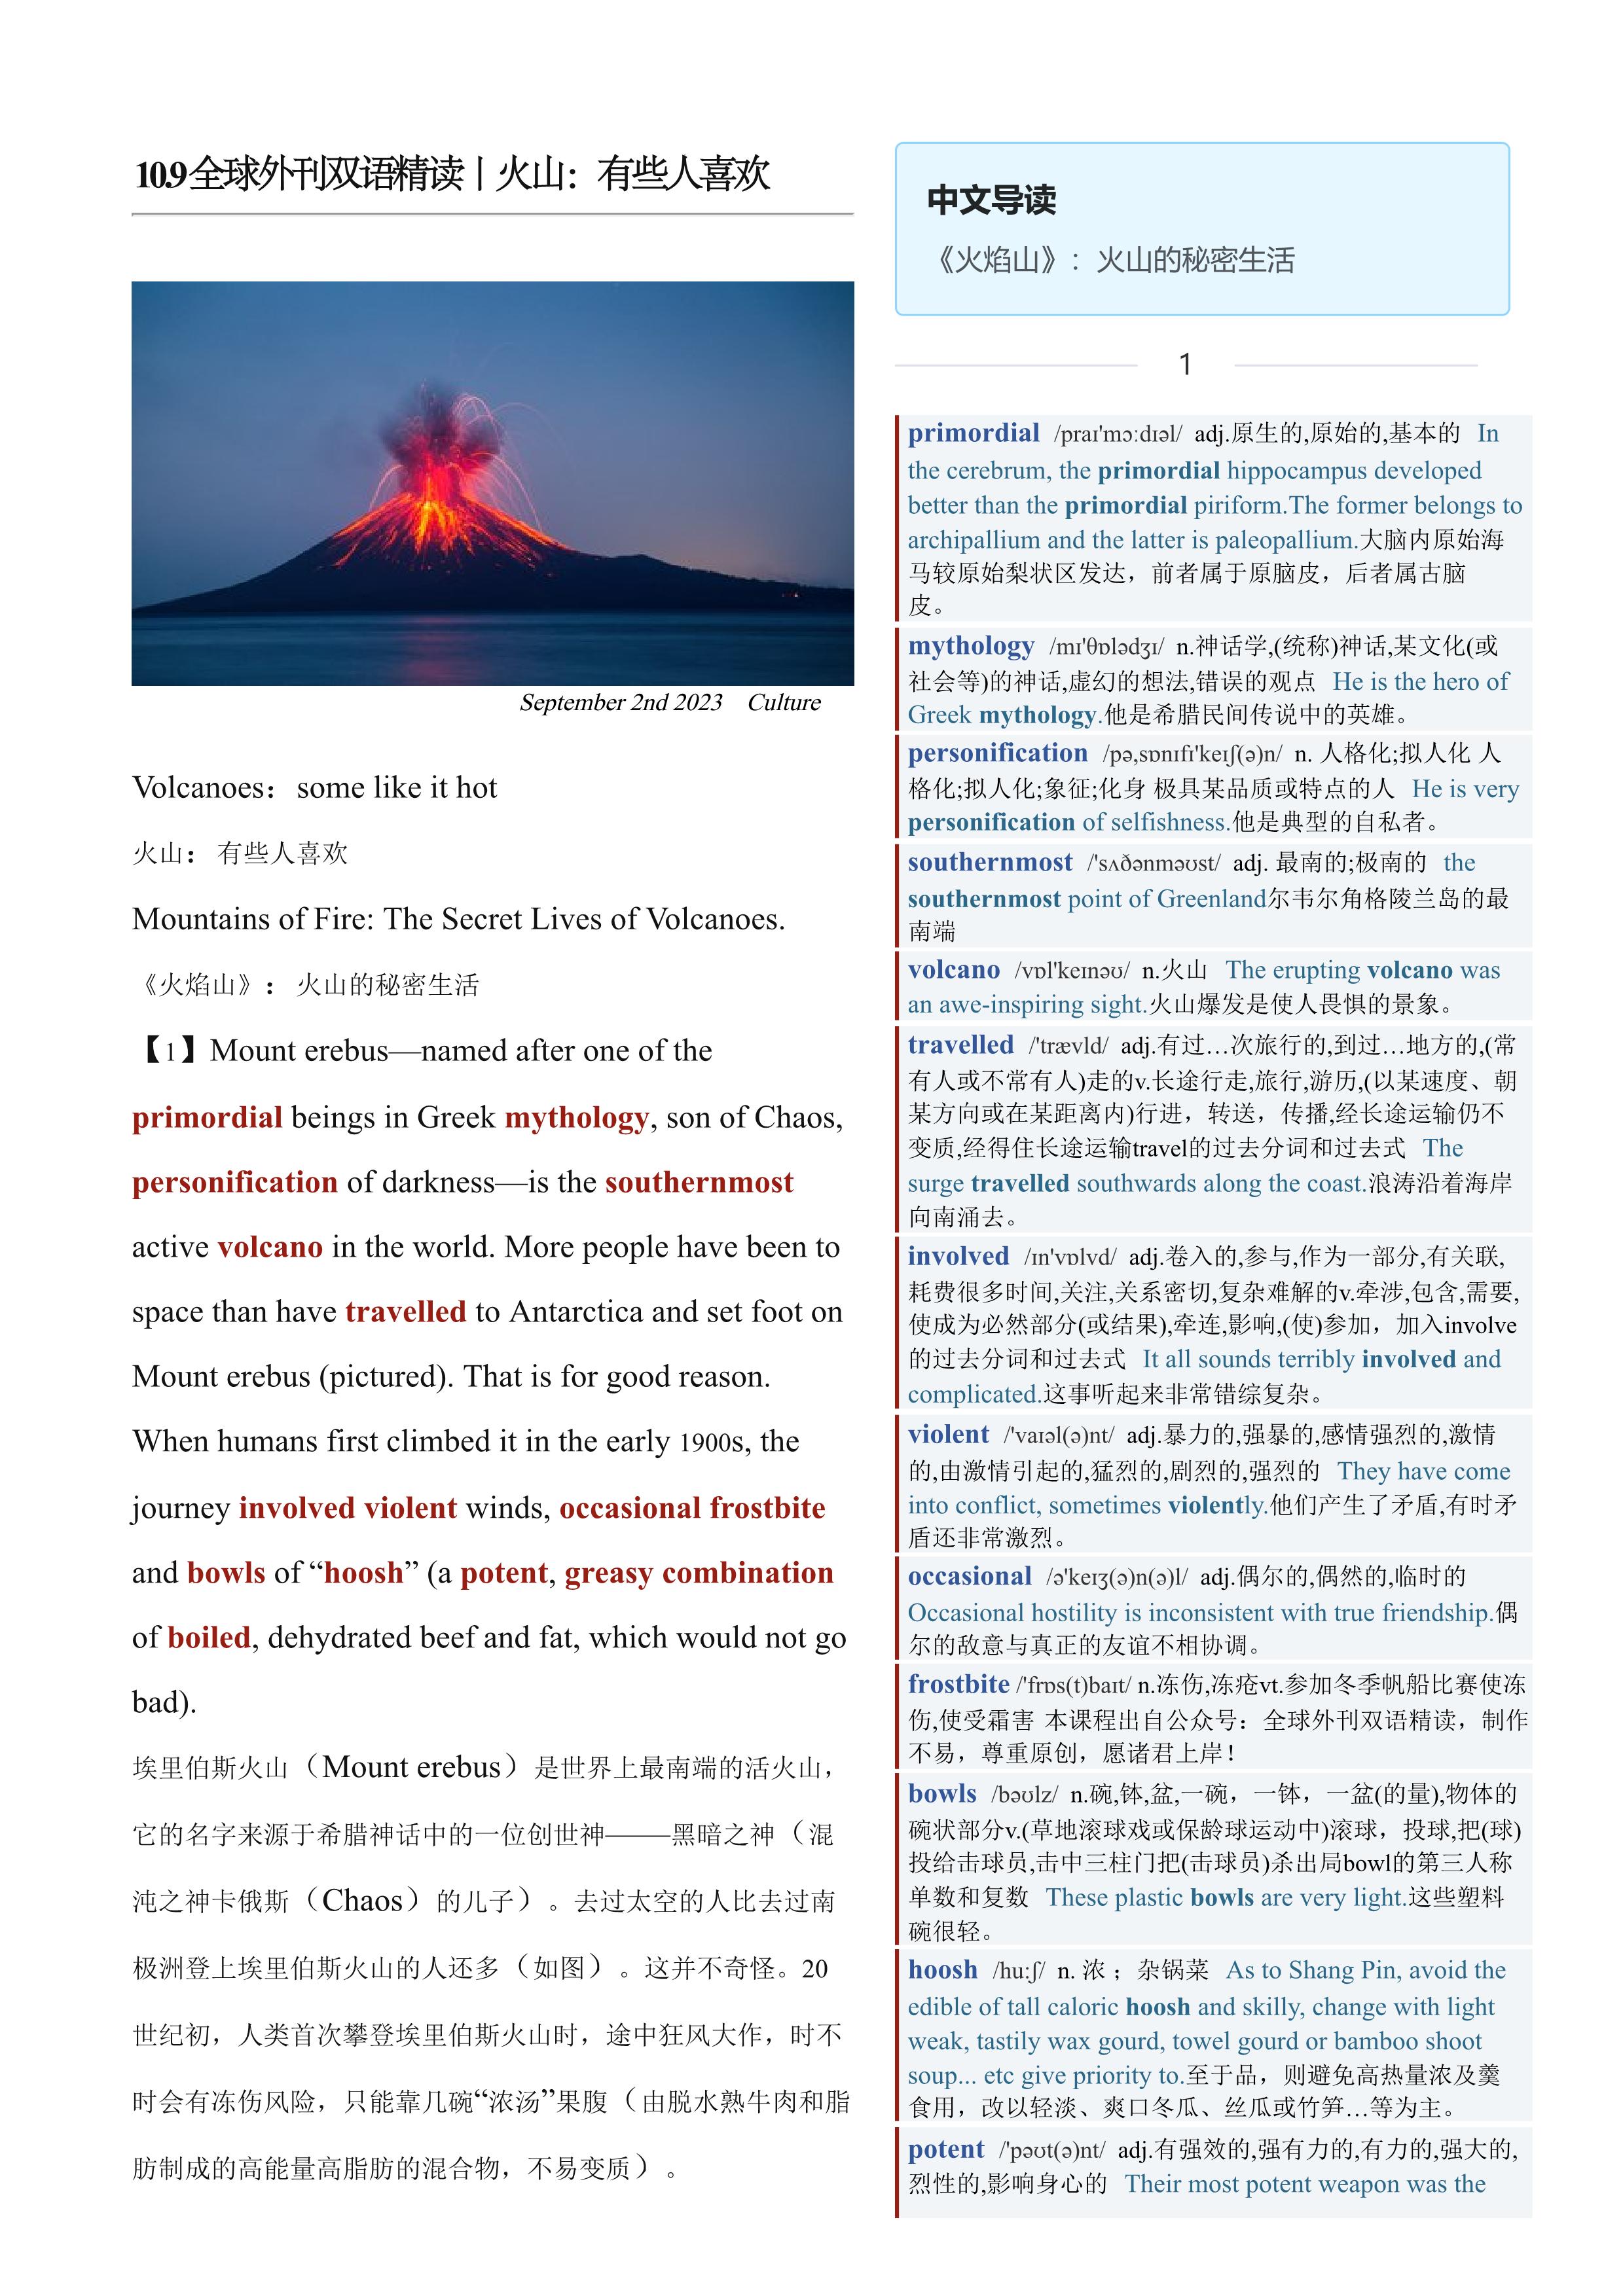 2023.10.09 经济学人双语精读丨火山：有些人喜欢 (.PDF/DOC/MP3)